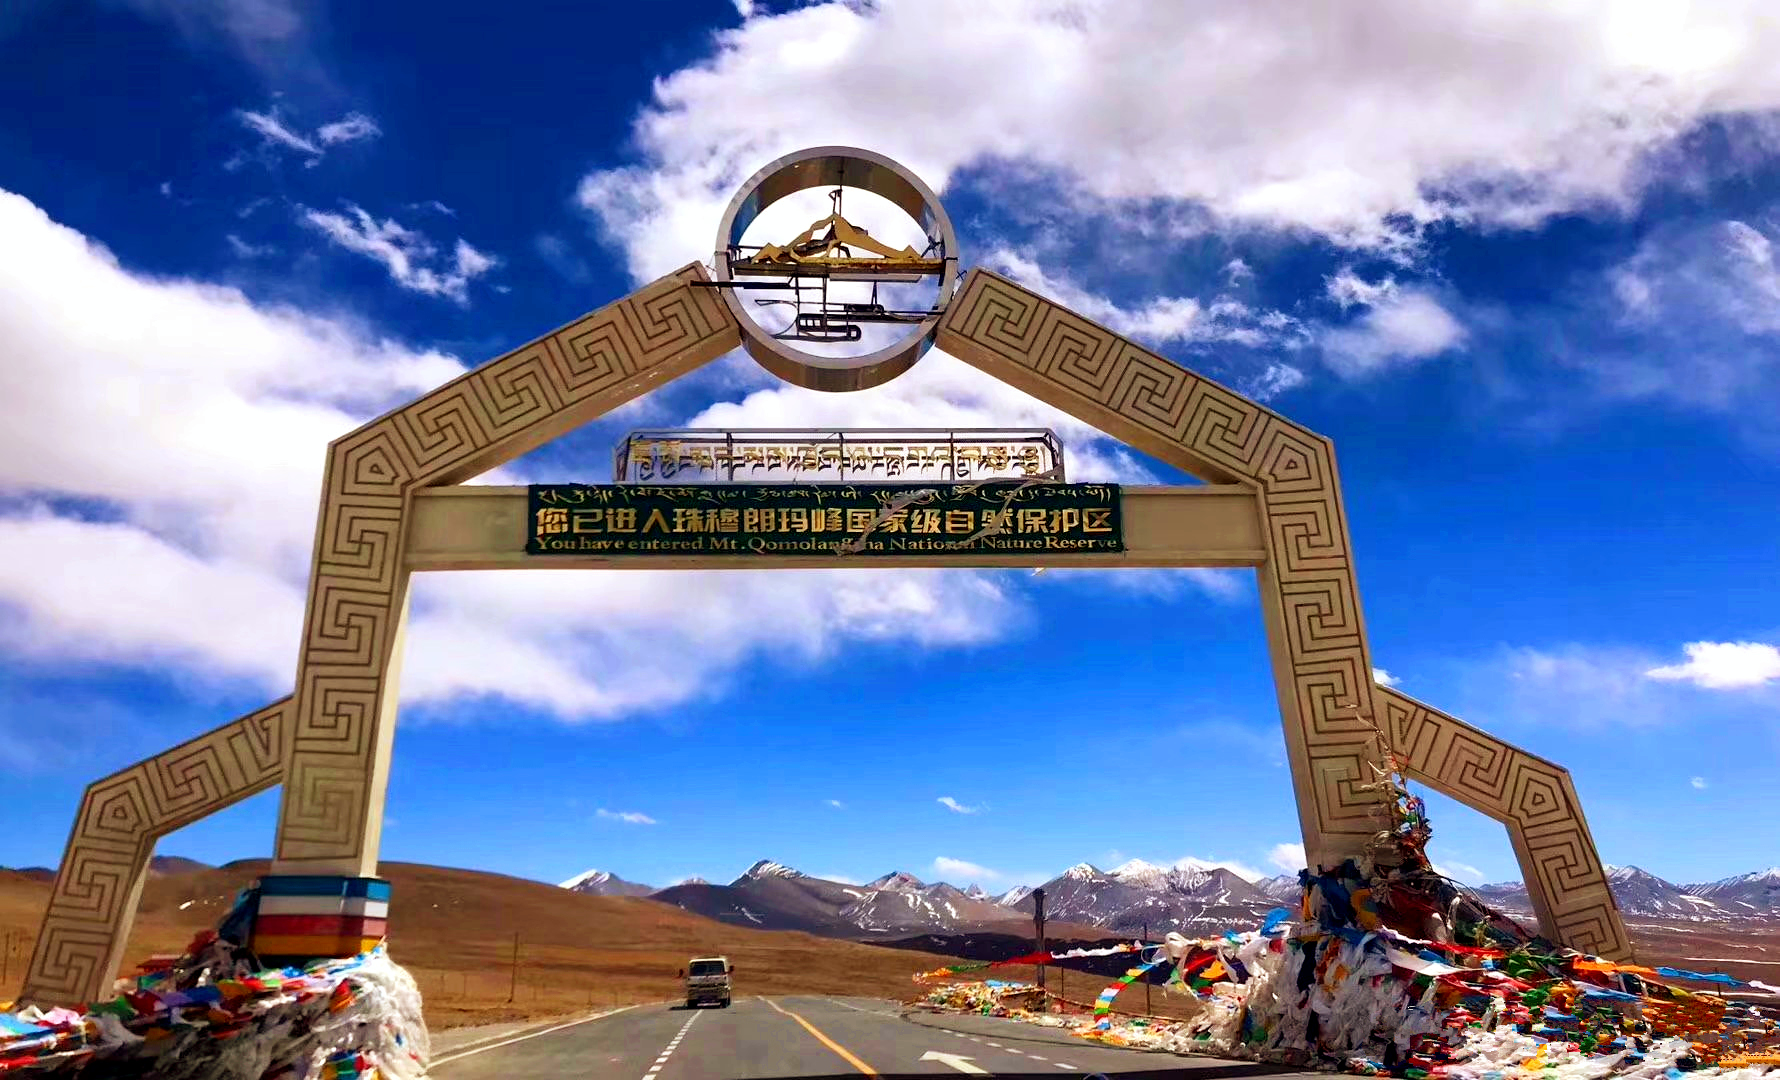 珠穆朗瑪峰國家級自然保護區(西藏珠穆朗瑪峰國家級自然保護區)